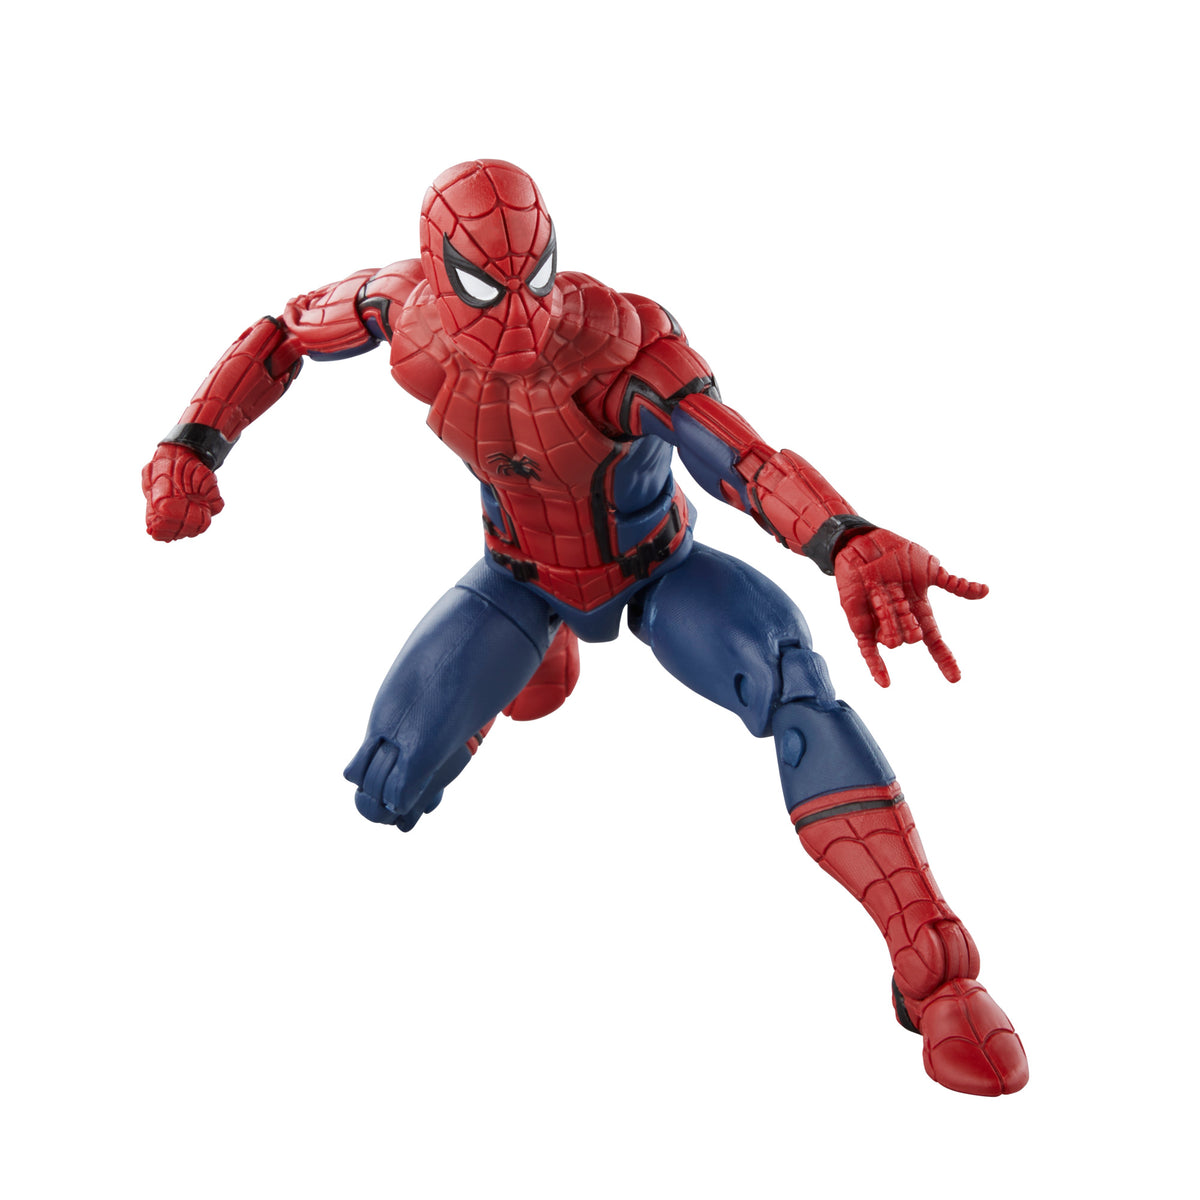 Hasbro Marvel Legends Series Spider-Man, 6 Marvel Legends Action Figures -  Marvel